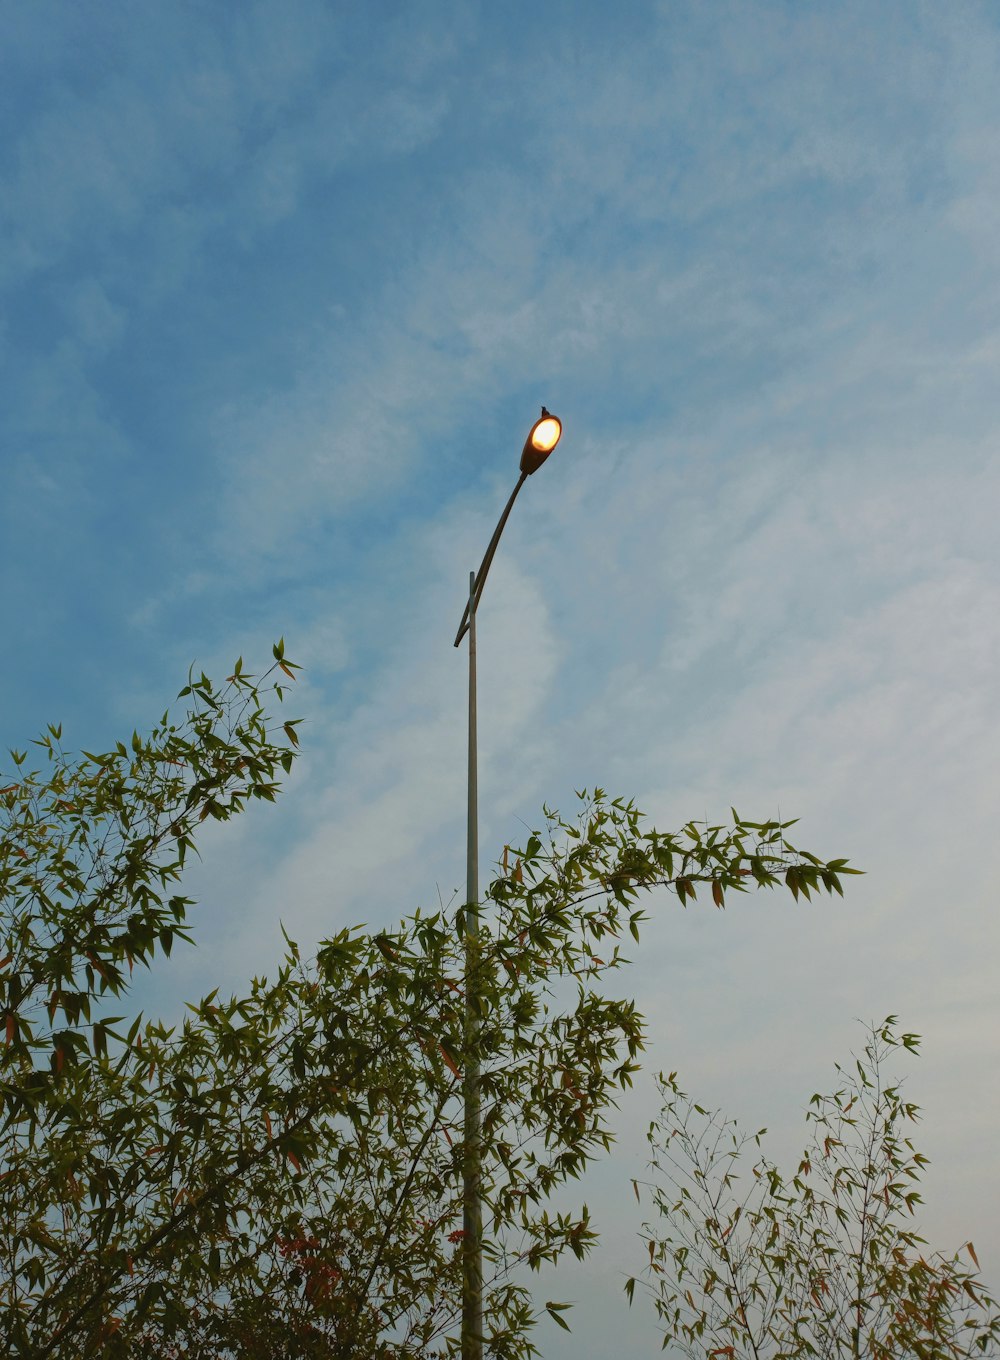 a street light on a pole next to a tree